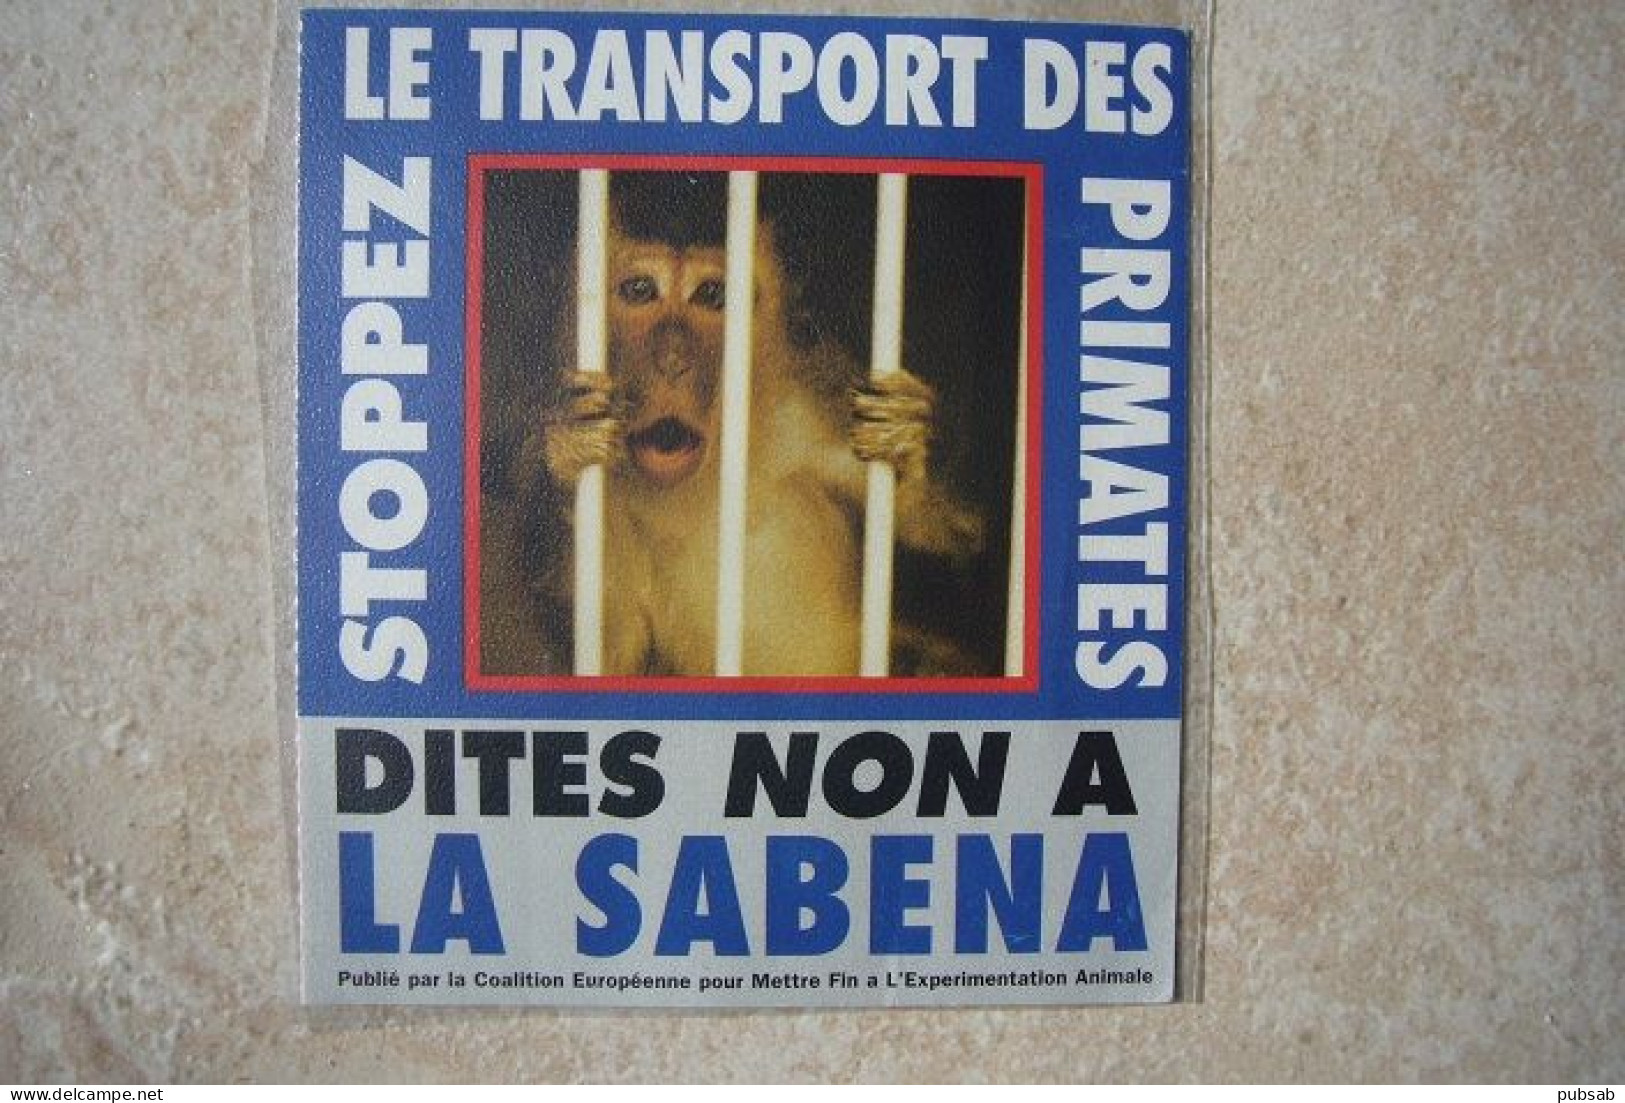 Avion / Airplane / Sabena / Autocollant / Sticker / Stopez Le Transport Des Primates / Dites Non à La SABENA - Stickers